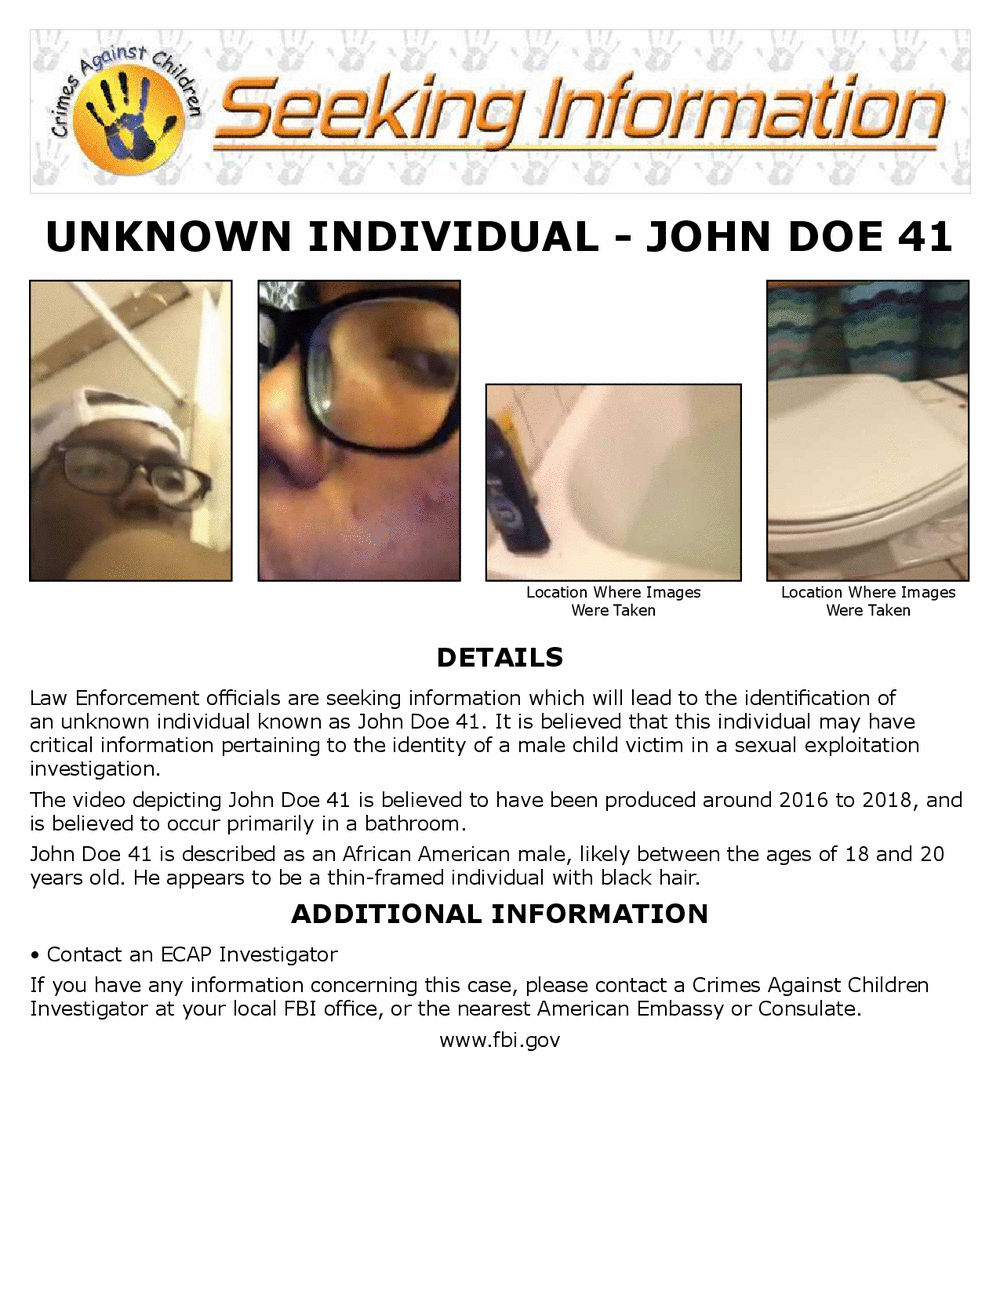 https://www.fbi.gov/wanted/ecap/unknown-individual---john-doe-41/john-doe-41-8-5x11-web.pdf/@@images/image